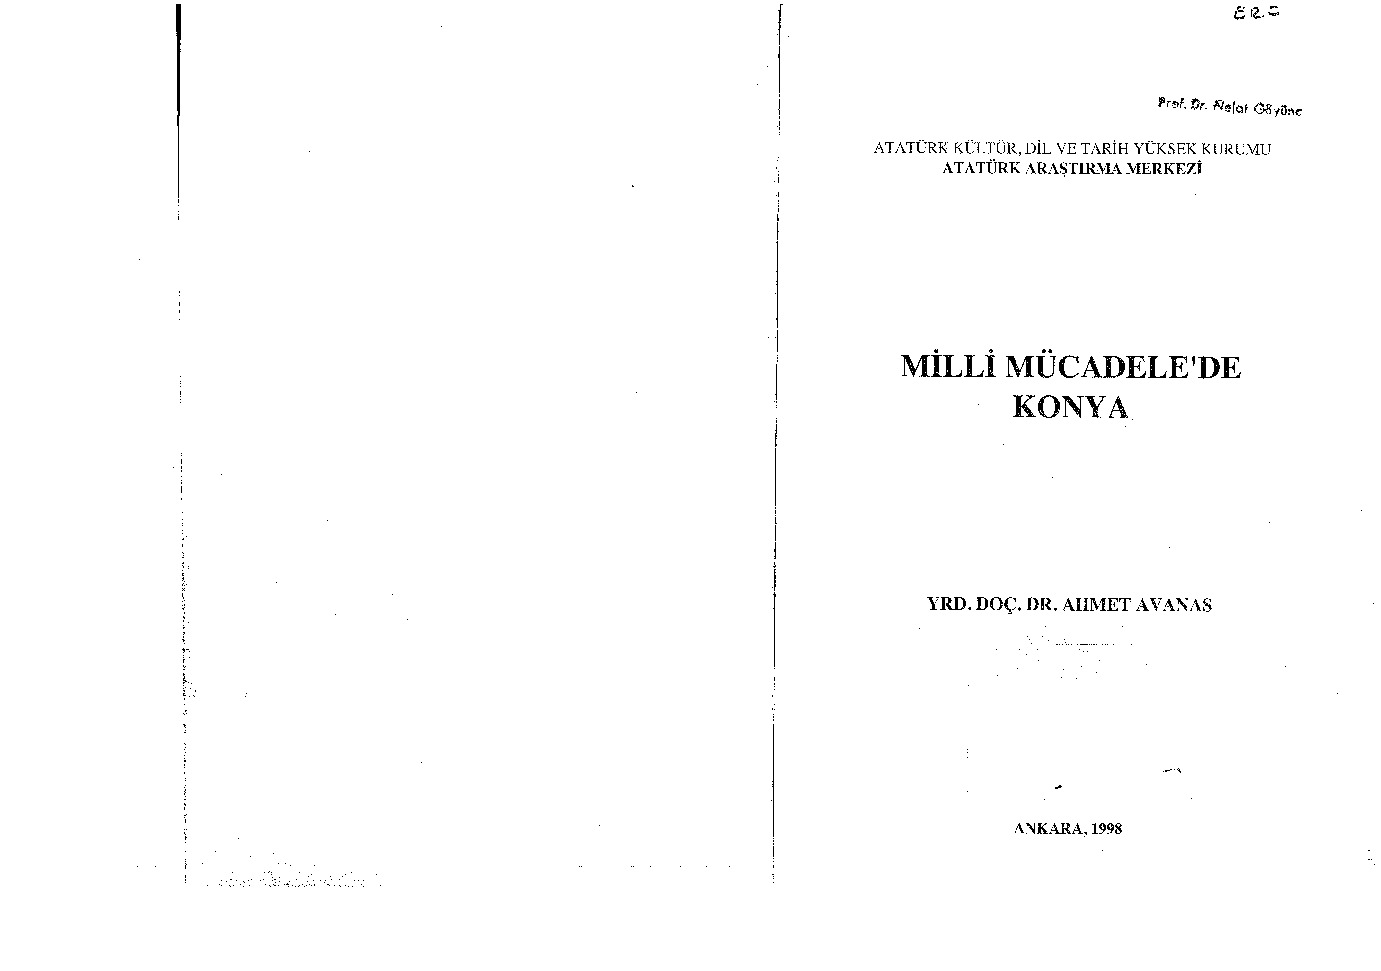 Milli Mucadilede Qunya-Ahmed Avanas-1998-288s